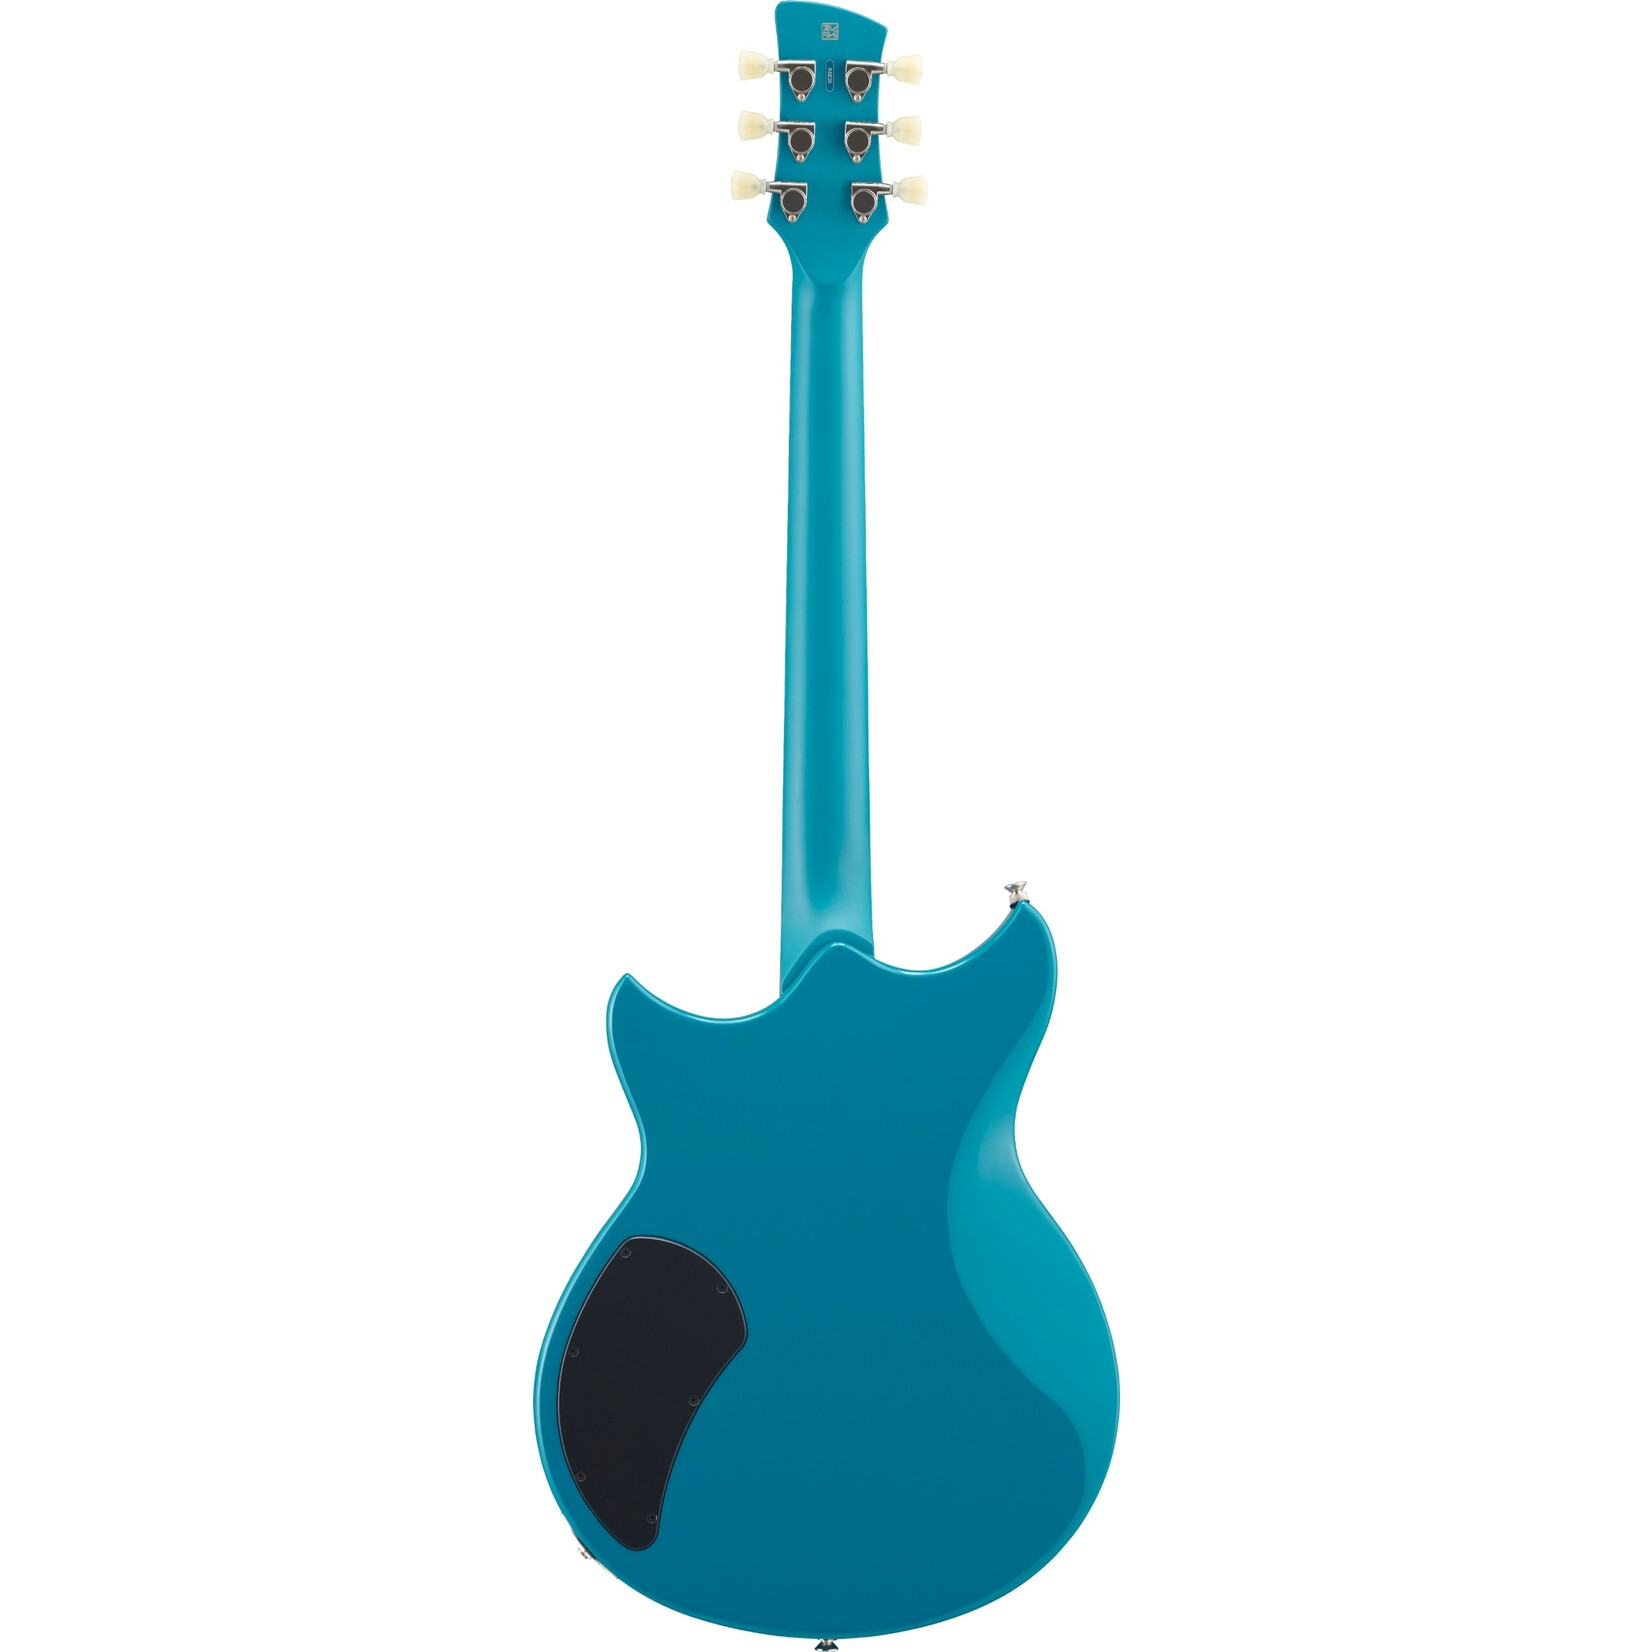 Yamaha Yamaha Revstar Element RSE20 Electric Guitar in Swift Blue